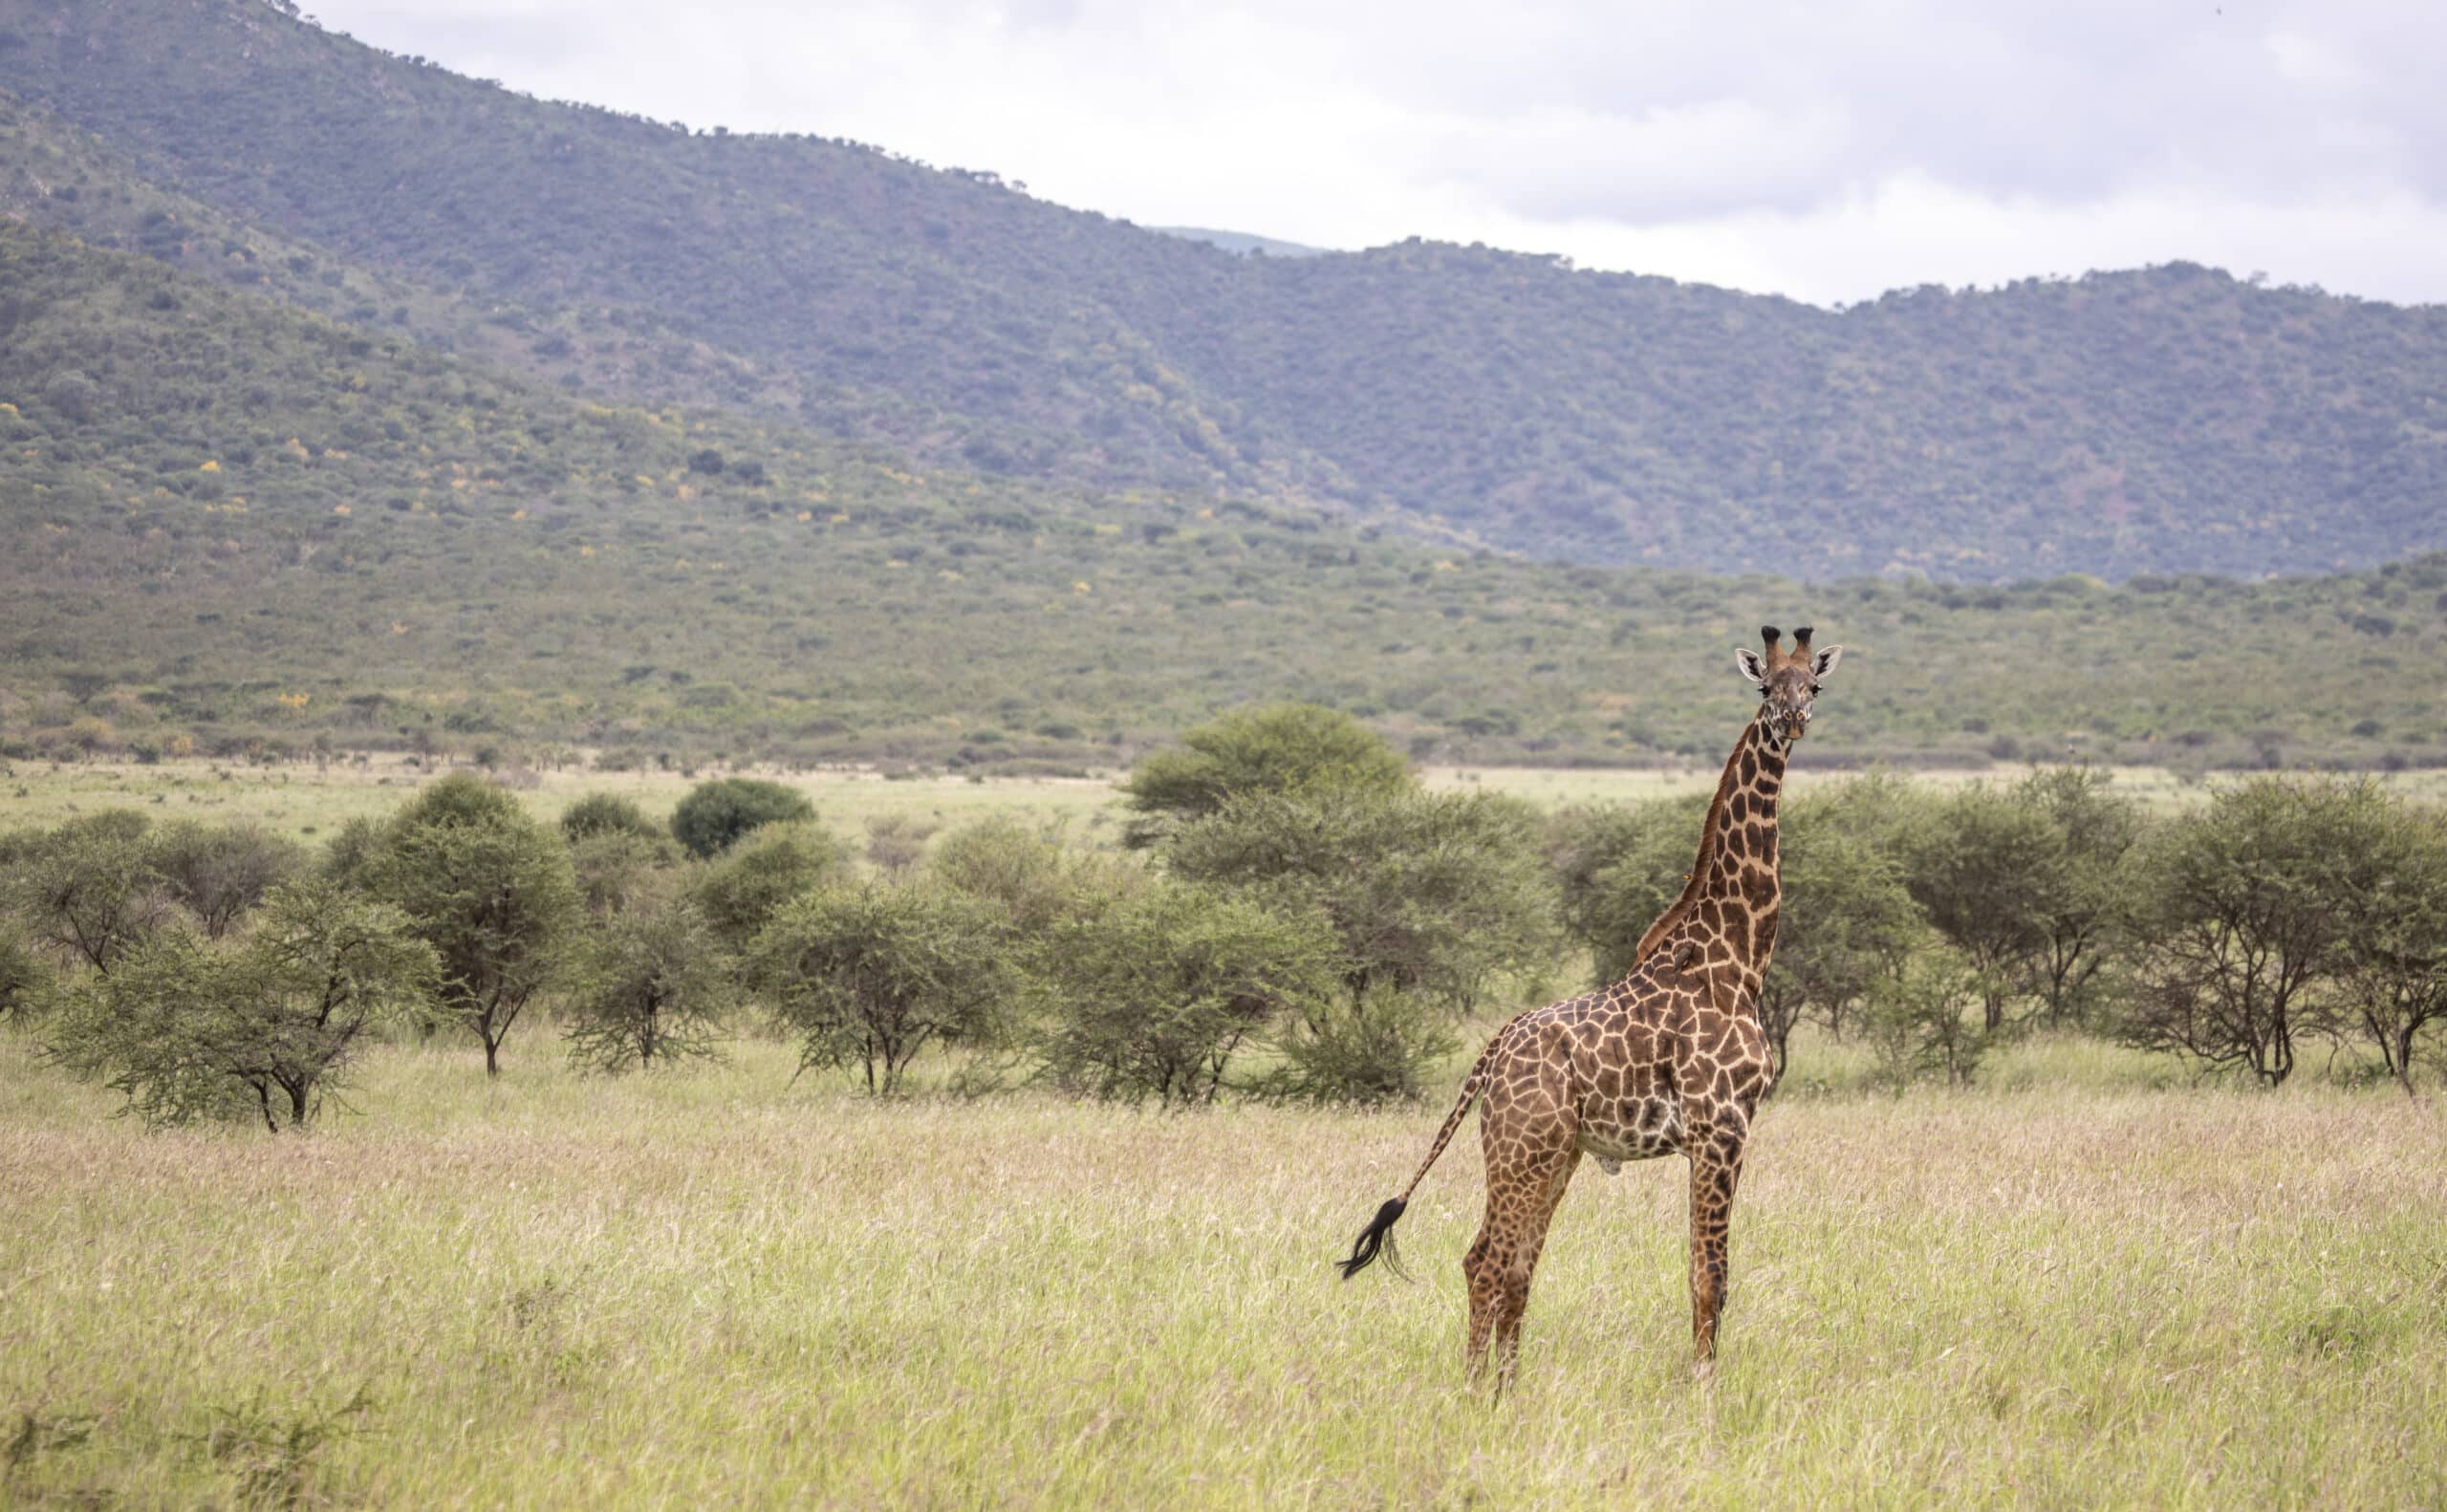 Giraffe at Mkomazi National Park